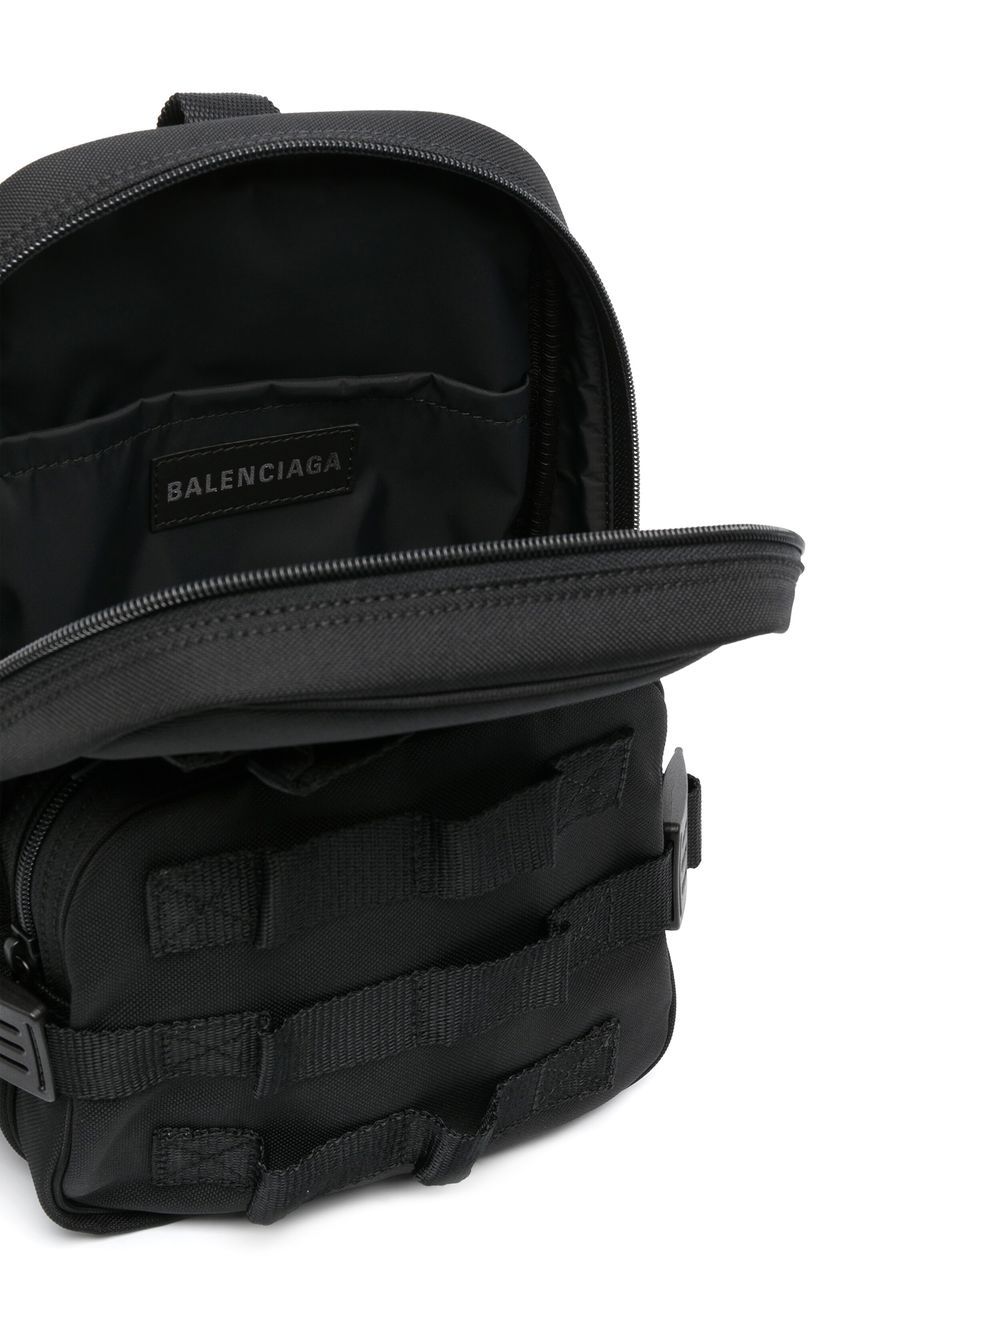 Balenciaga Army Sling Backpack - Farfetch